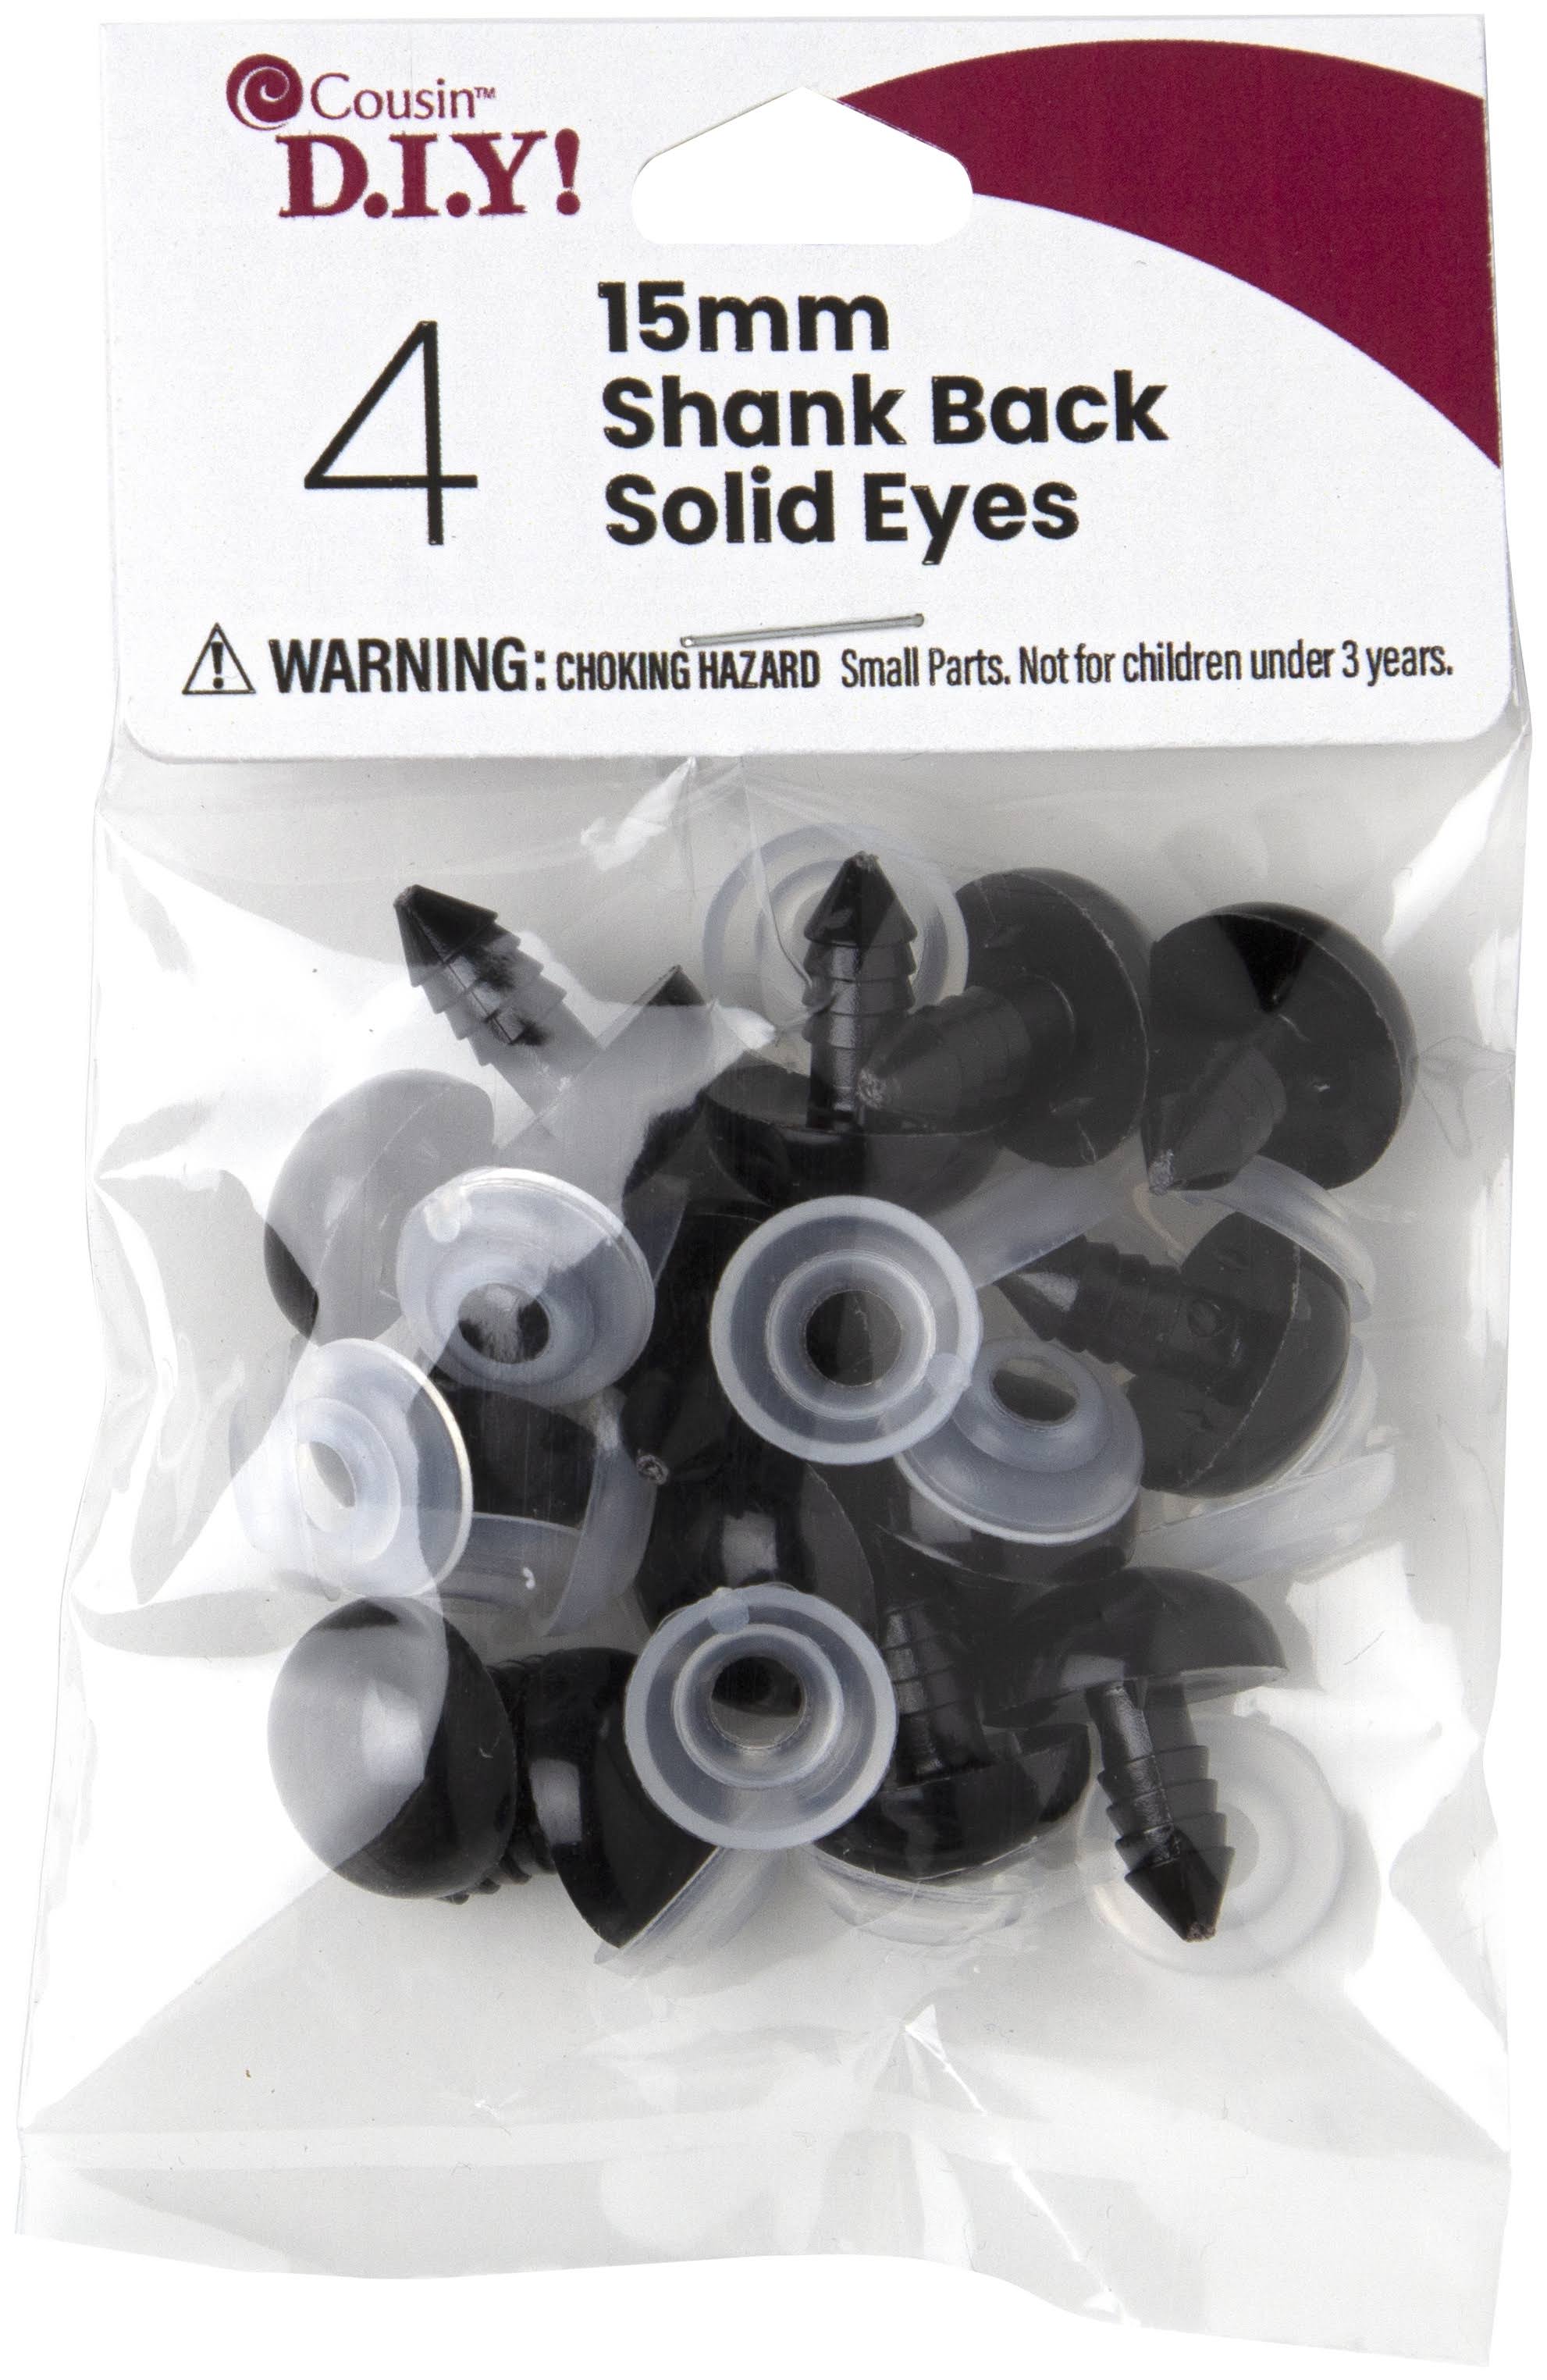 Cousin Shank Back Solid Eyes 15mm 4/Pkg-Black -40000421